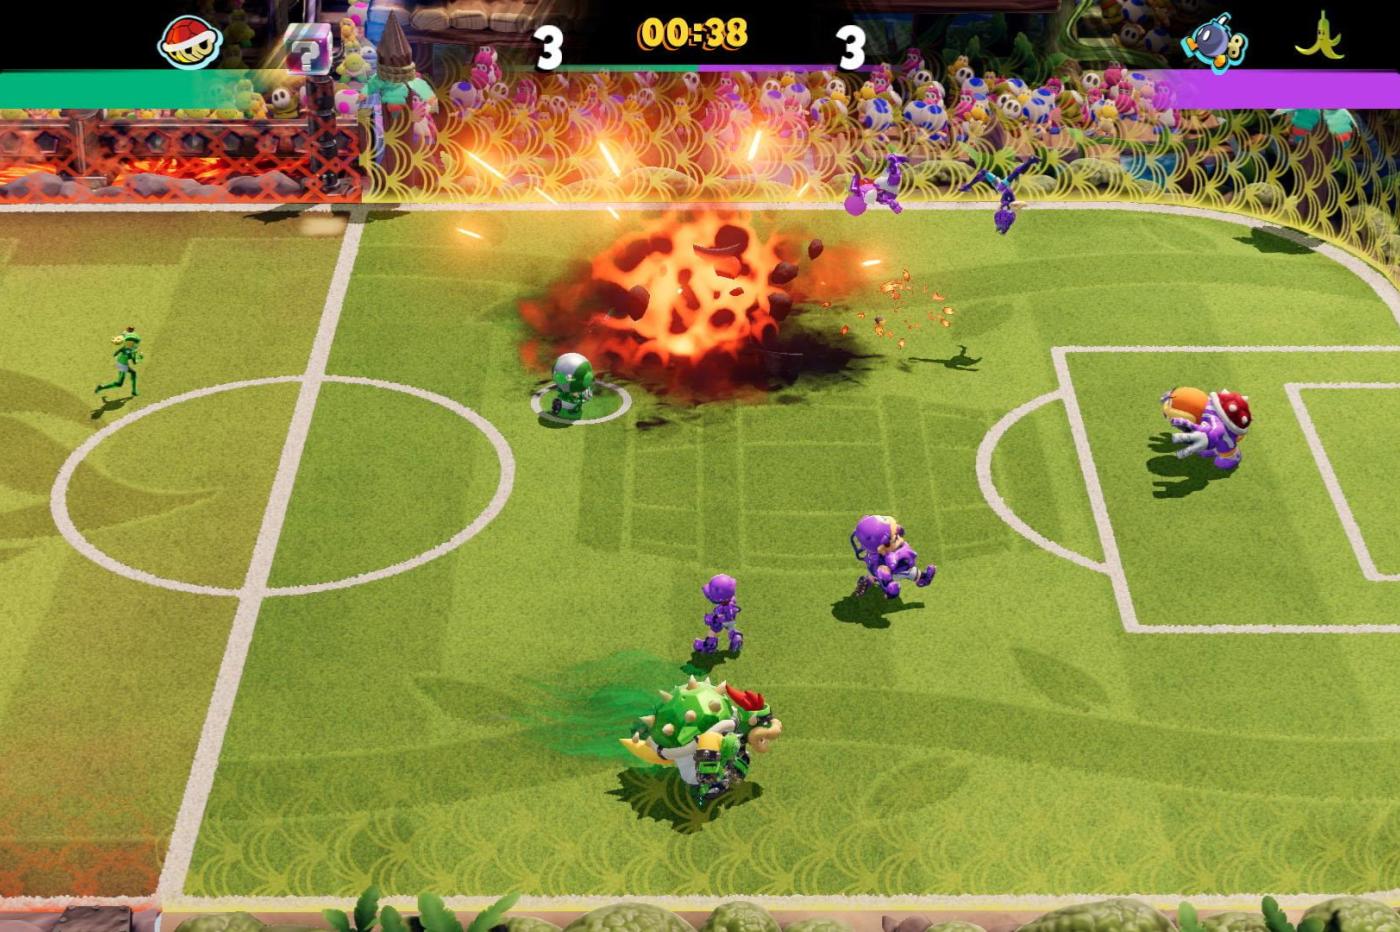 Capture d'écran du jeu en pleine partie alors qu'une explosion de Bom-Omb a lieu sur le terrain